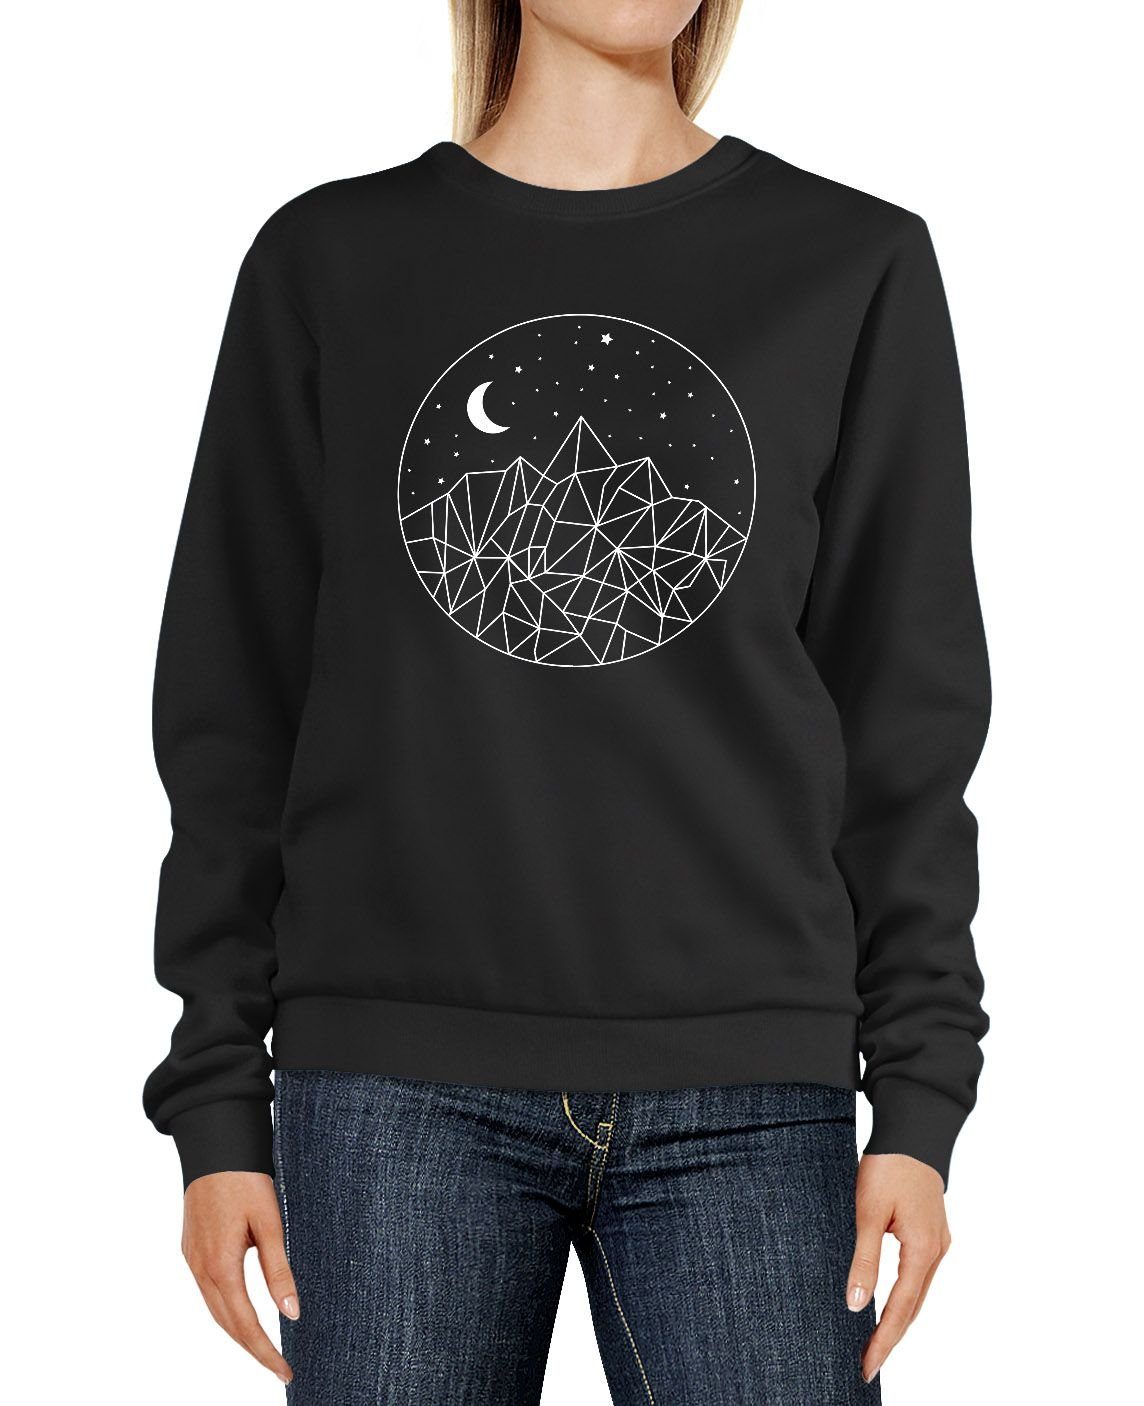 Neverless Sweatshirt »Sweatshirt Damen Print Berge und Sterne Polygon  Design Rundhals-Pullover Pulli Sweater Neverless®« online kaufen | OTTO